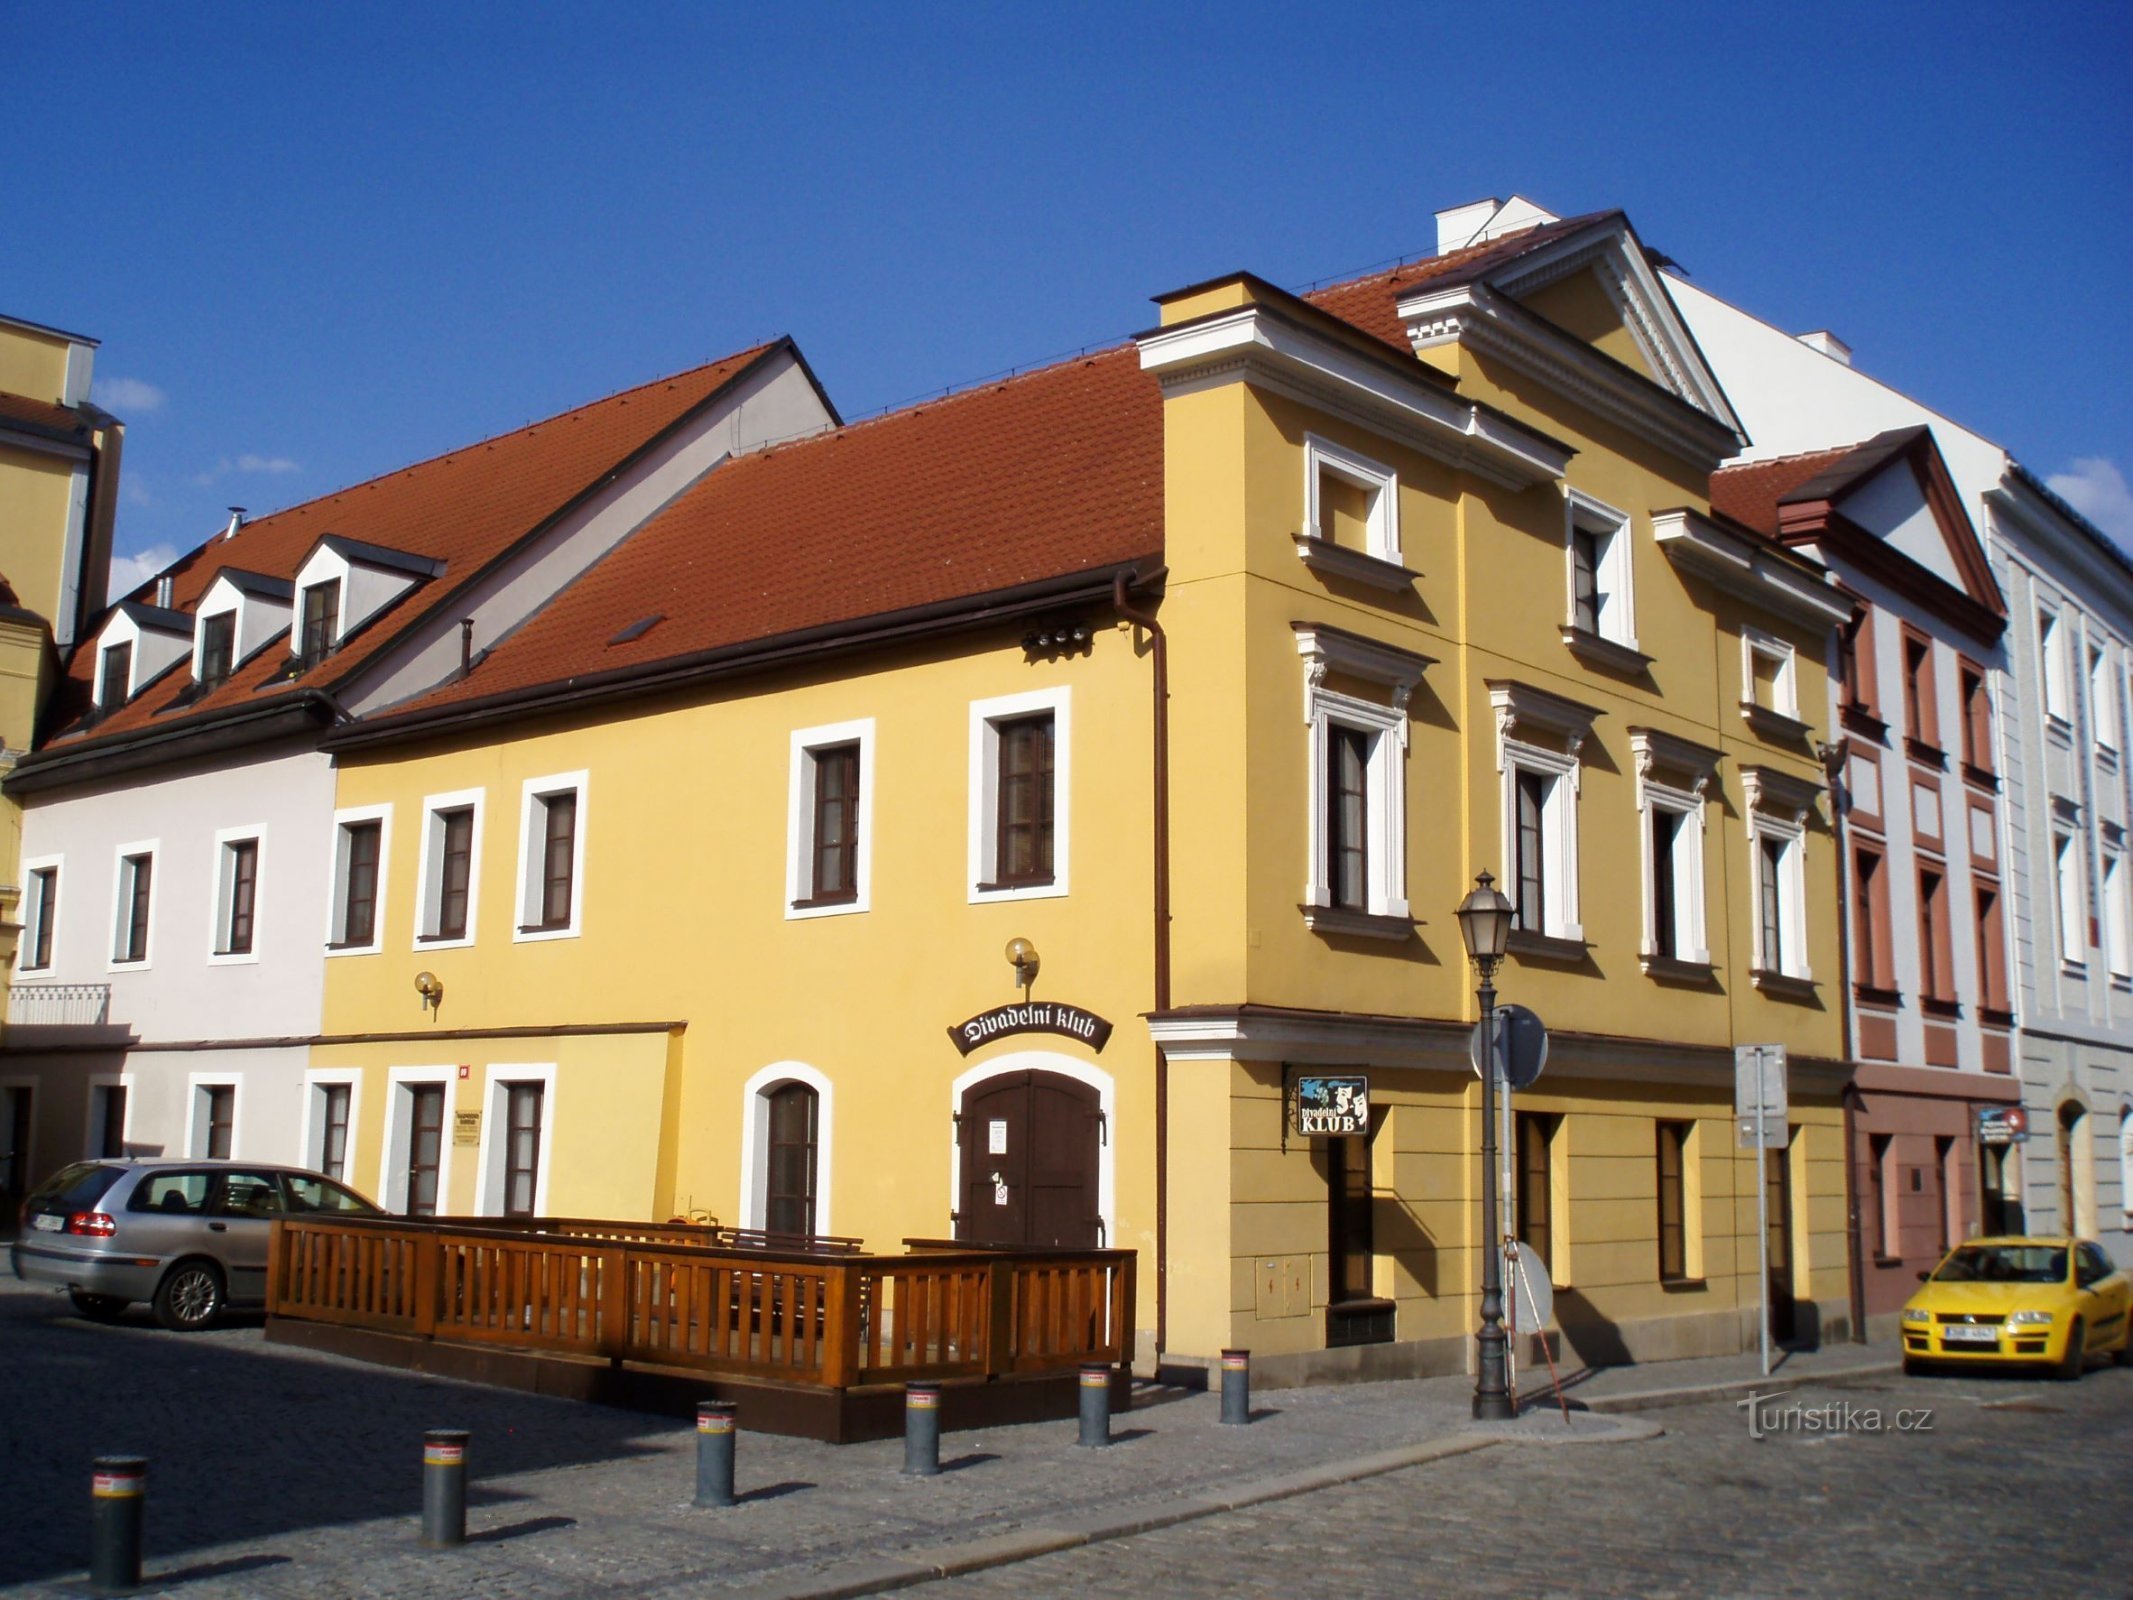 Dlouhá čp. 99 (Hradec Králové, 16.4.2011)